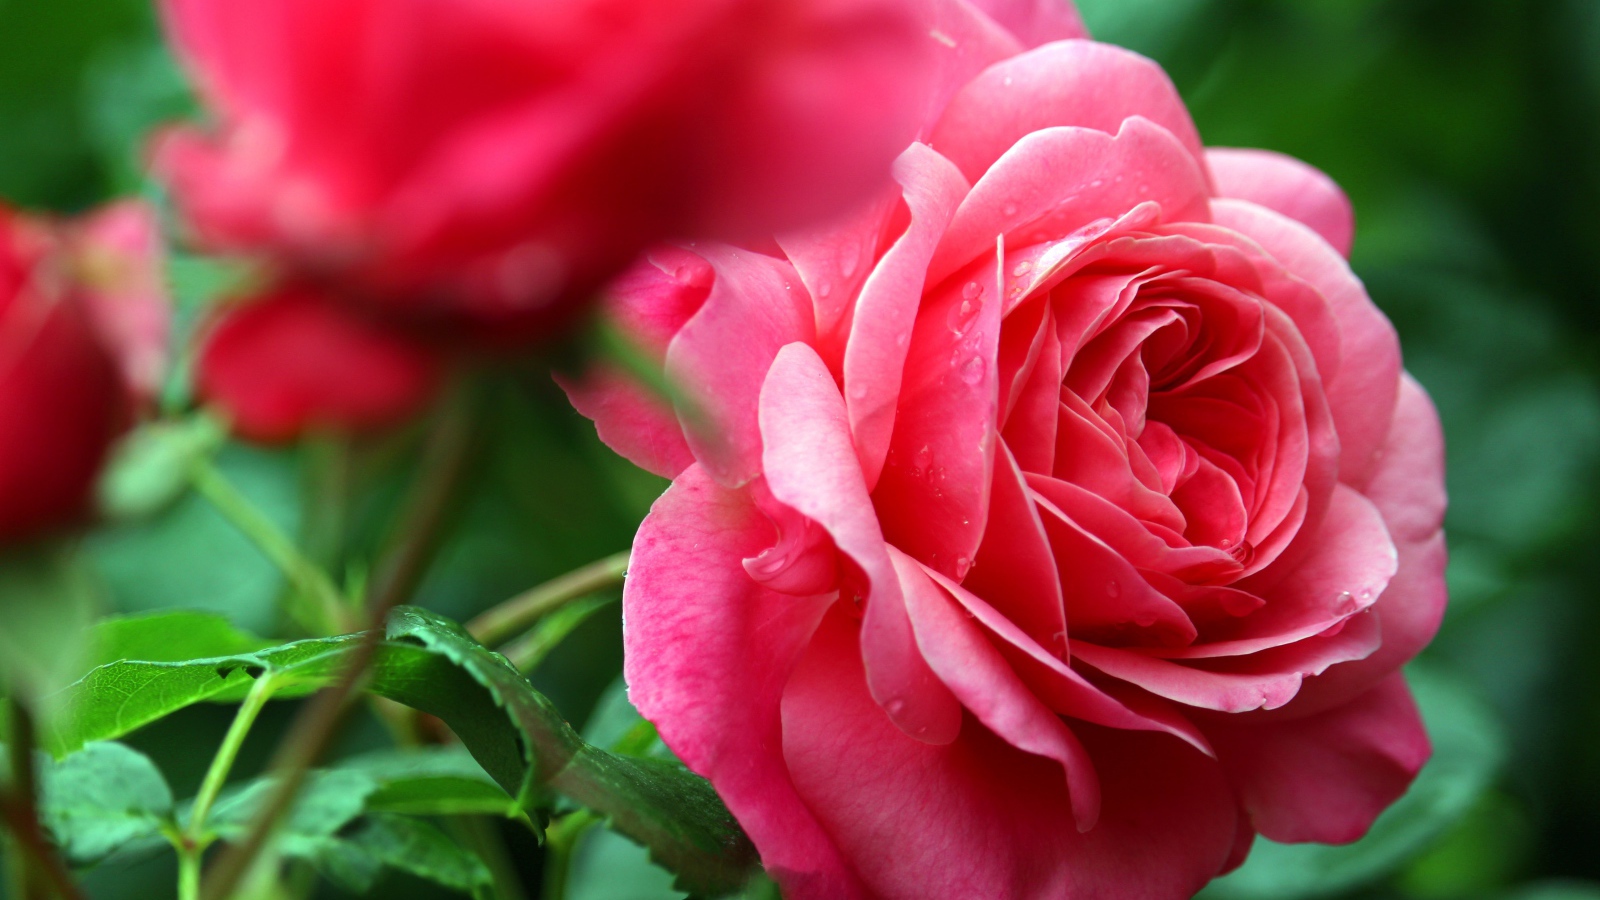 Розовые розы с каплями росы крупным планом